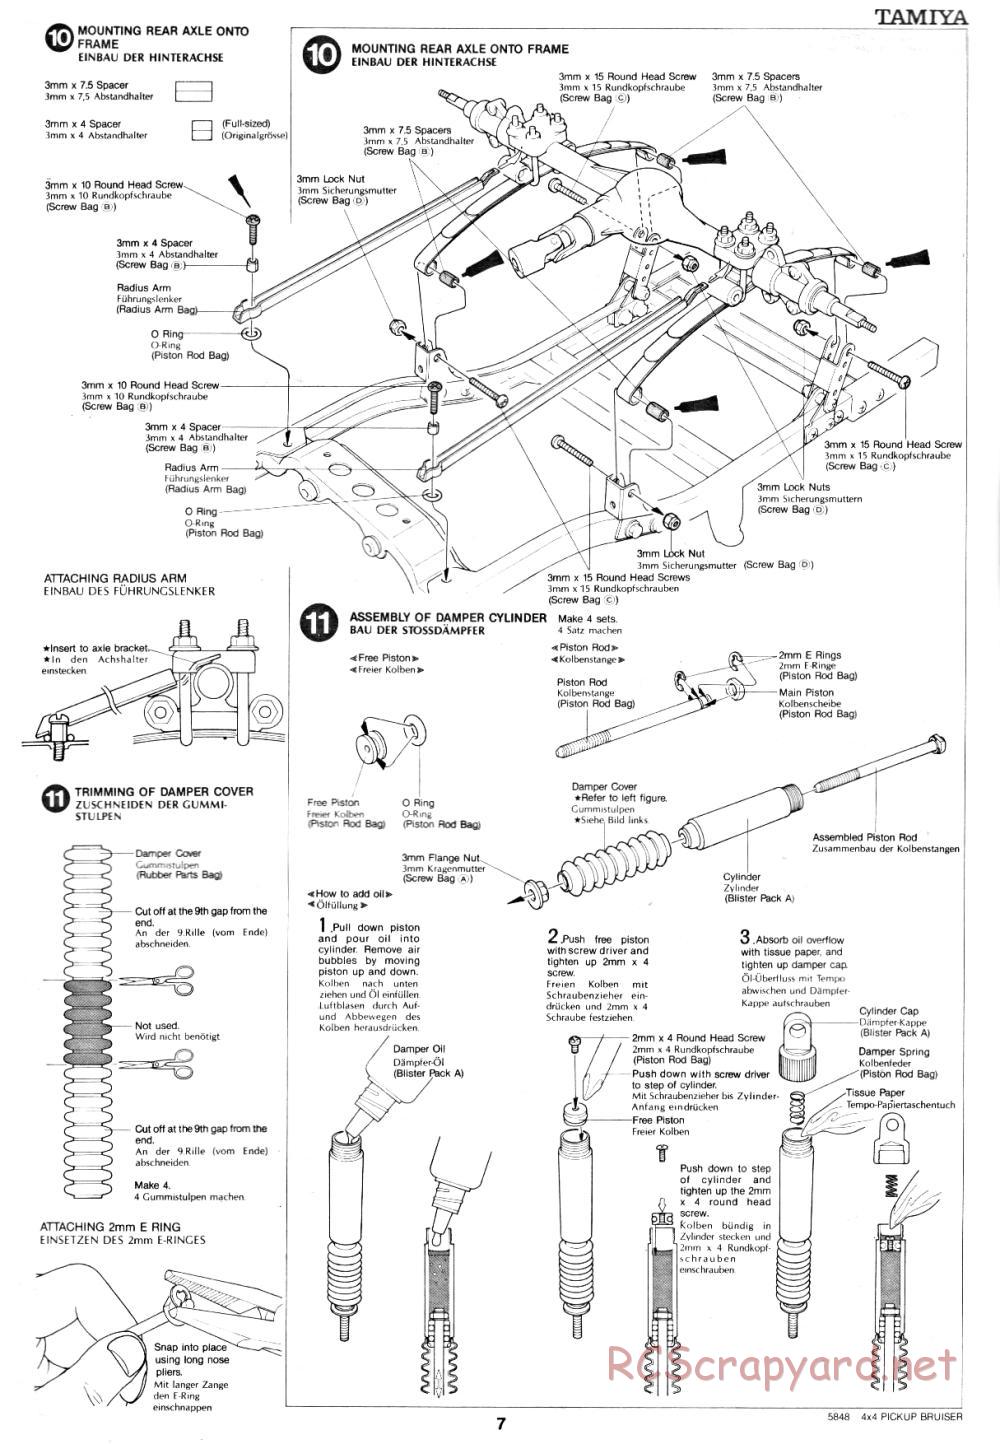 Tamiya - Toyota 4x4 Pick-Up Bruiser - 58048 - Manual - Page 7